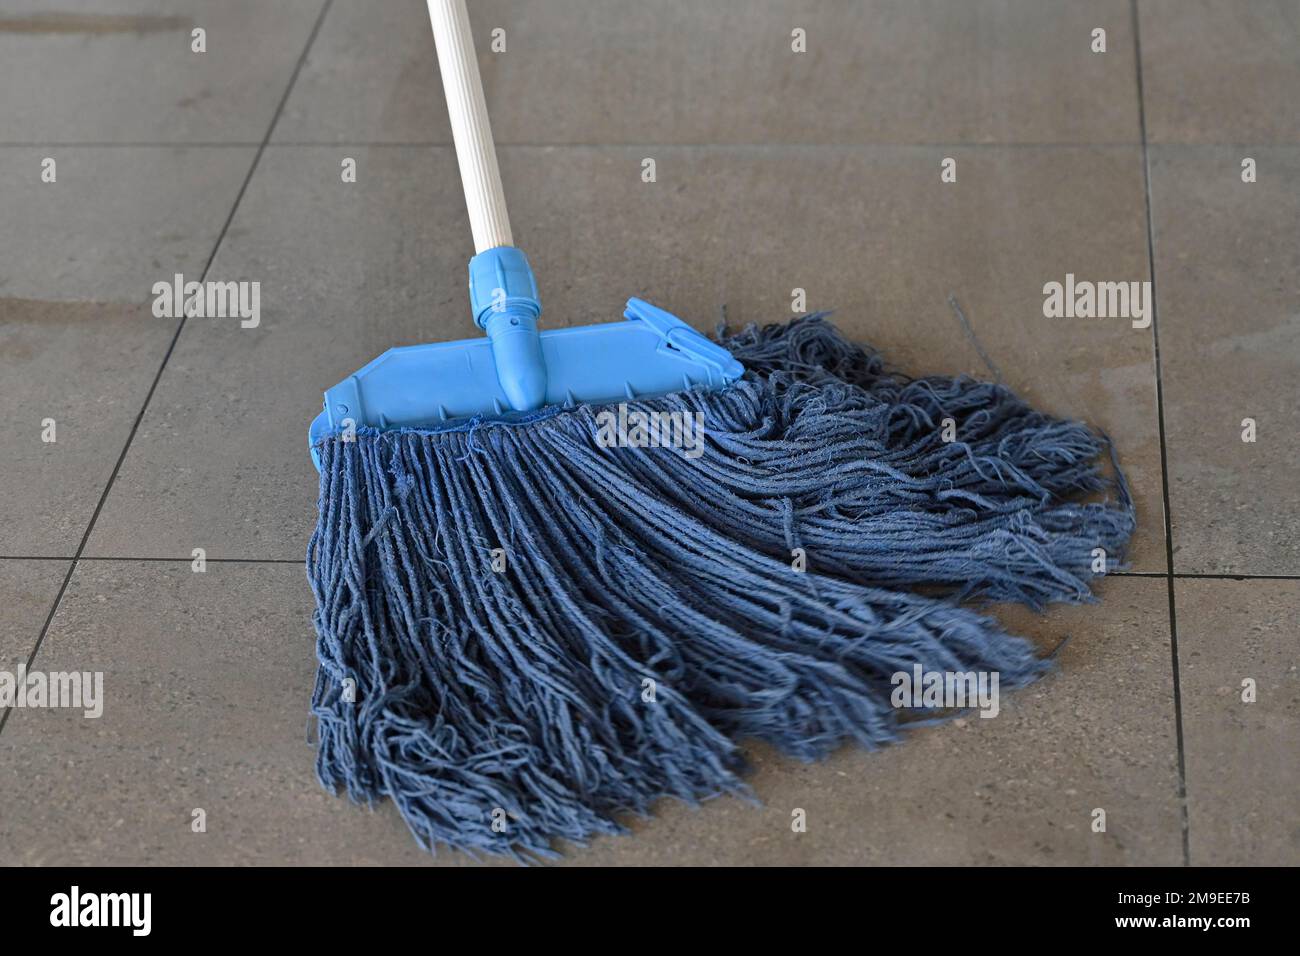 https://c8.alamy.com/comp/2M9EE7B/floor-cleaning-floor-wiper-2M9EE7B.jpg